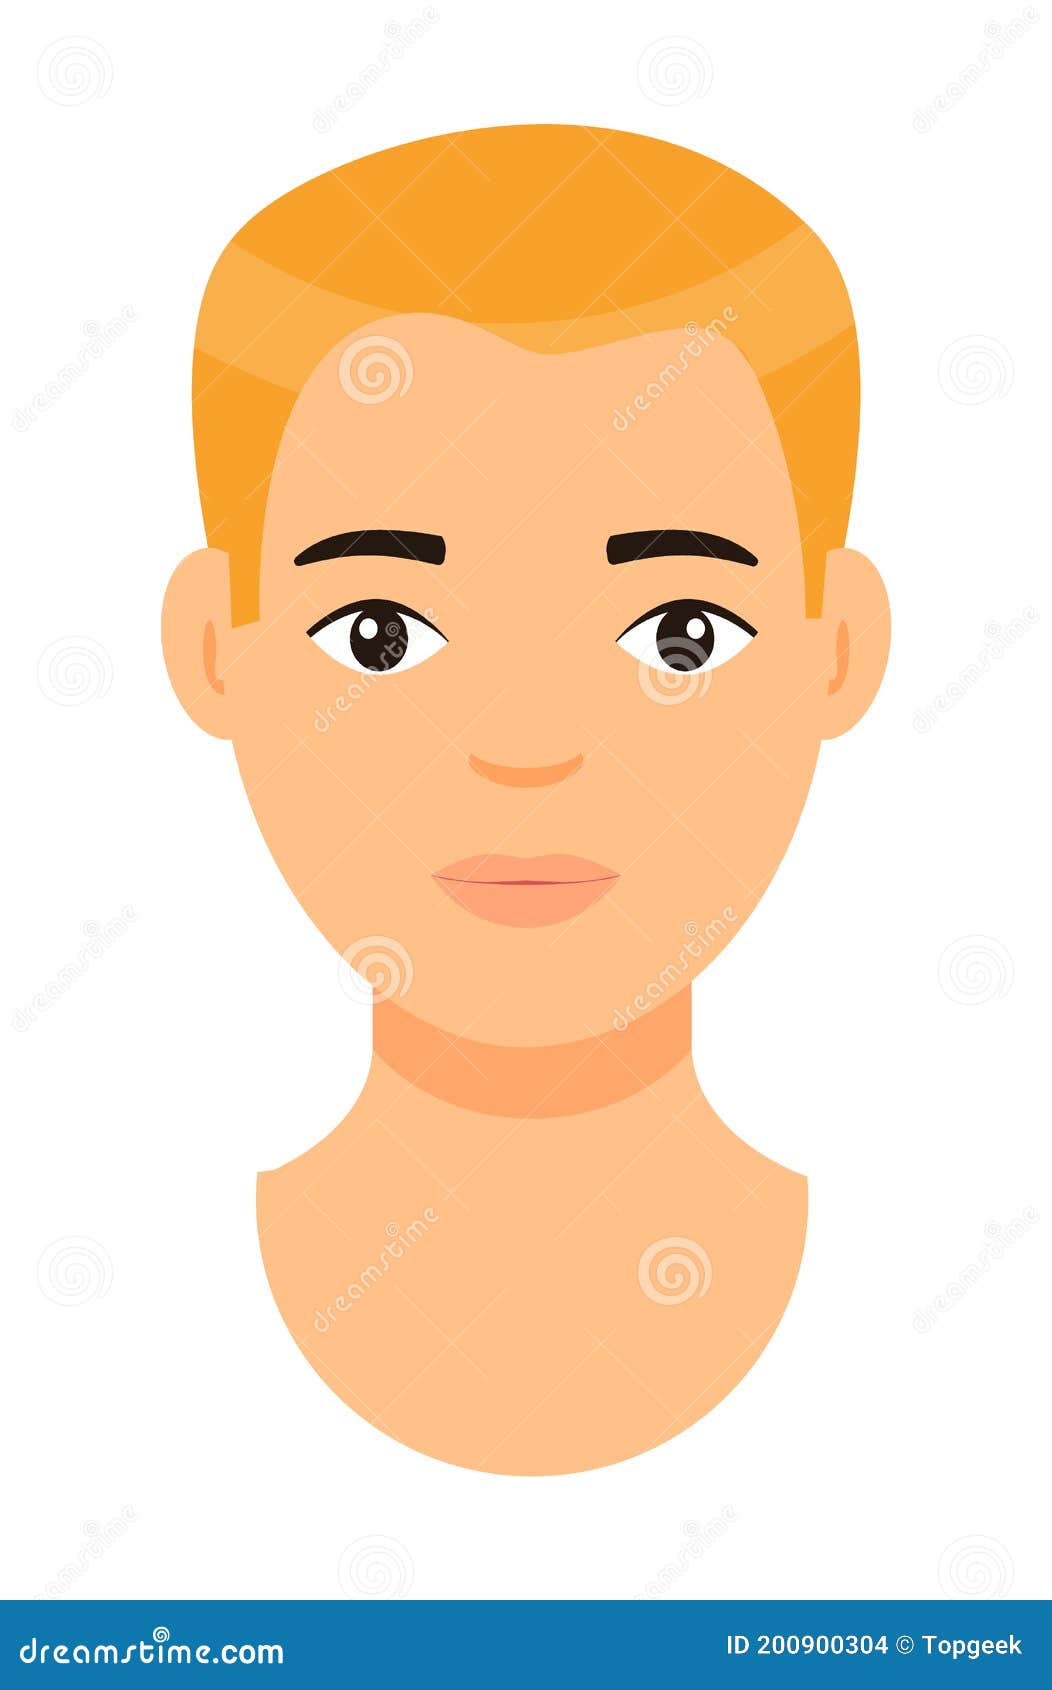 Cartoon Character, Blond Man, Guy With Fair Hair, Avatar Or Portrait Of